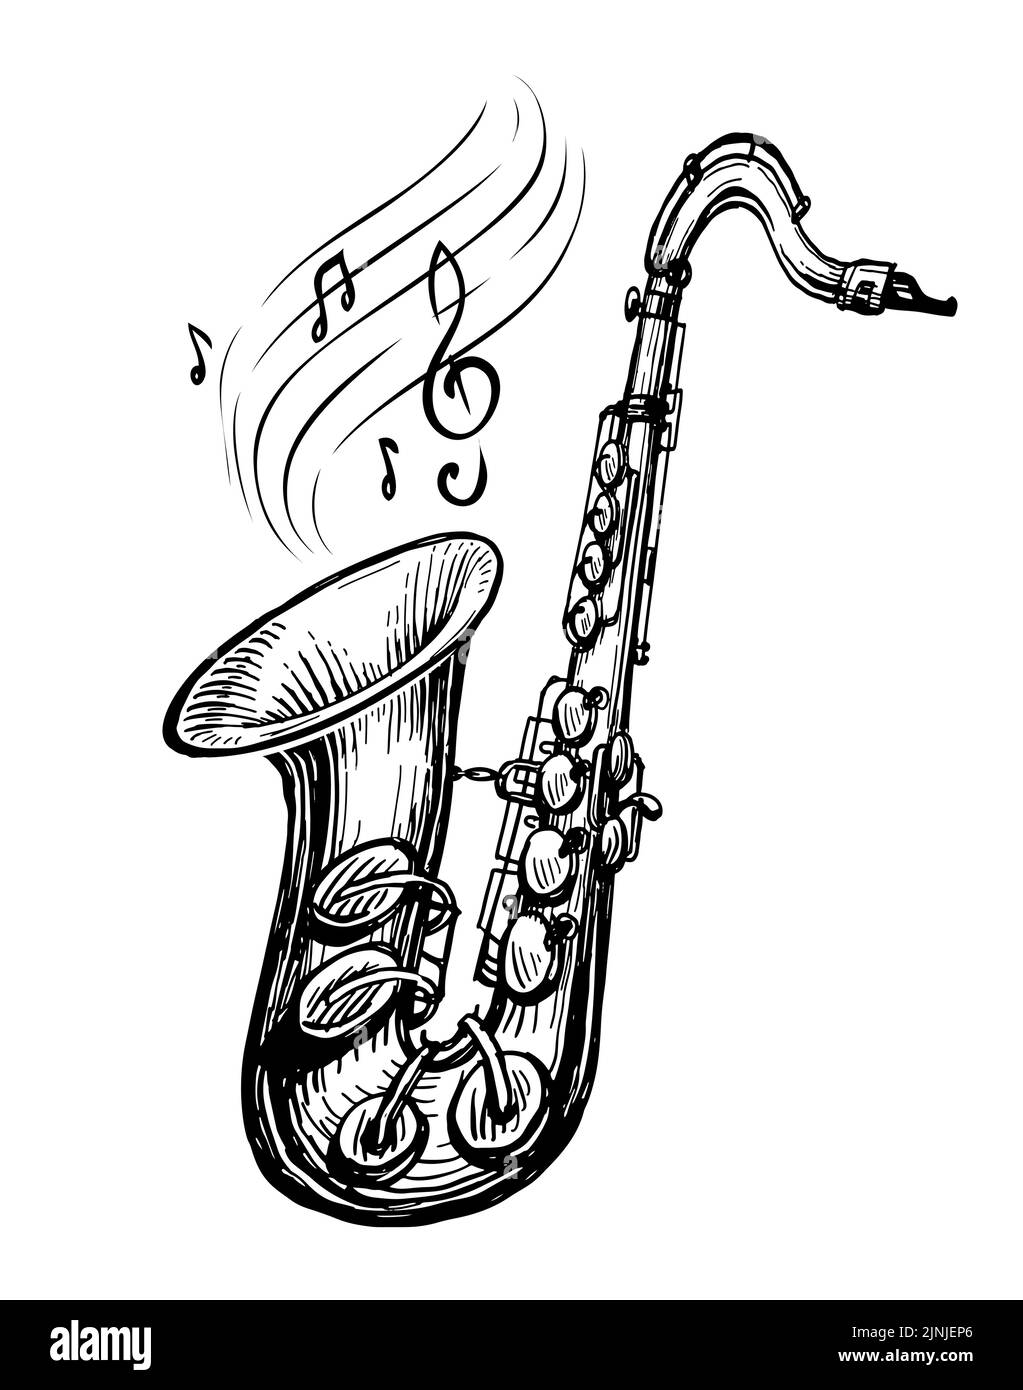 Saxophone avec notes musicales. Concept de musique. Esquisse dessinée à la main. Illustration vectorielle vintage Illustration de Vecteur